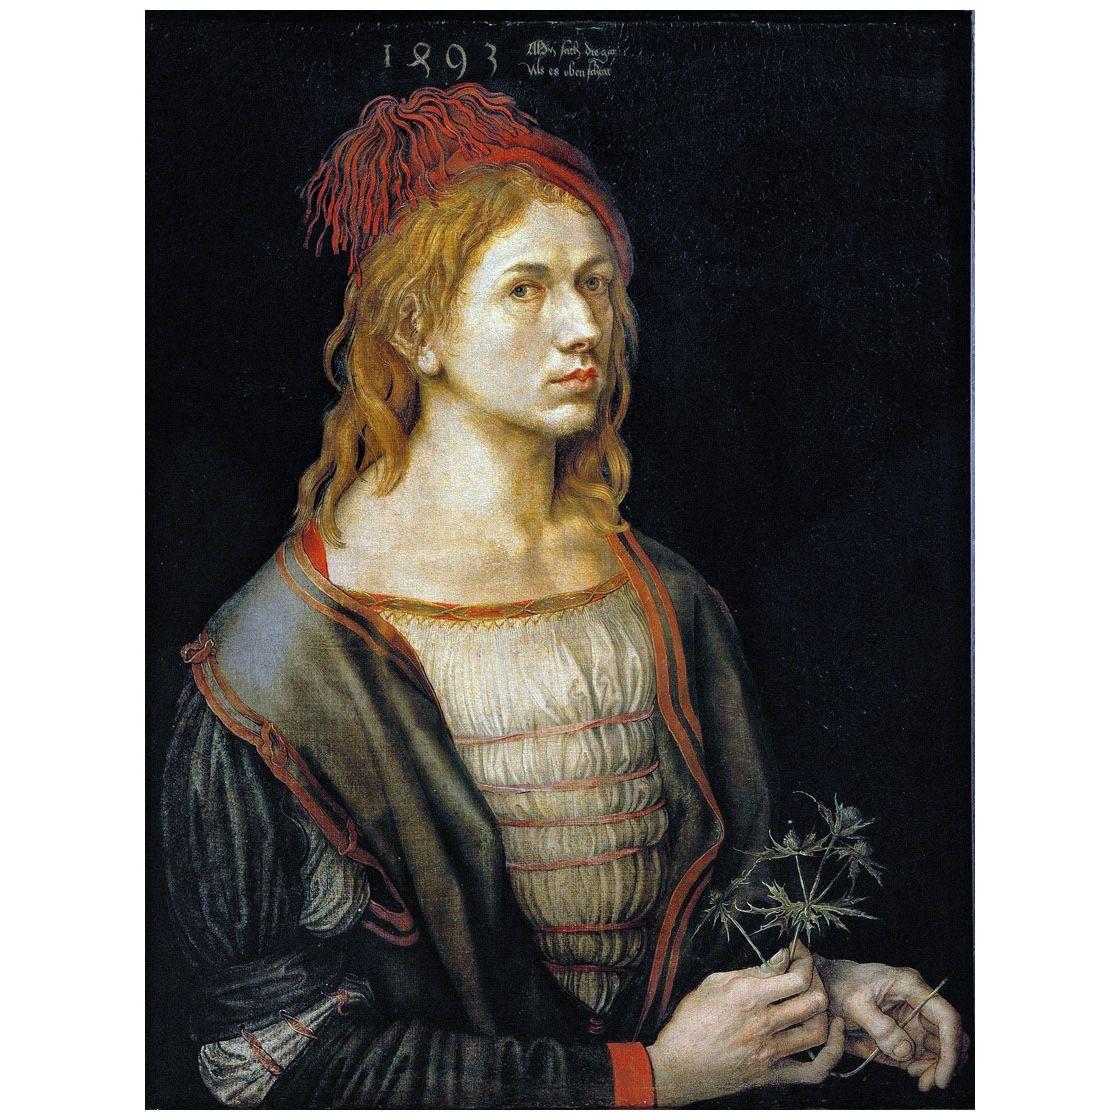 Albrecht Durer. Self-Portrait. 1493. Louvre Paris